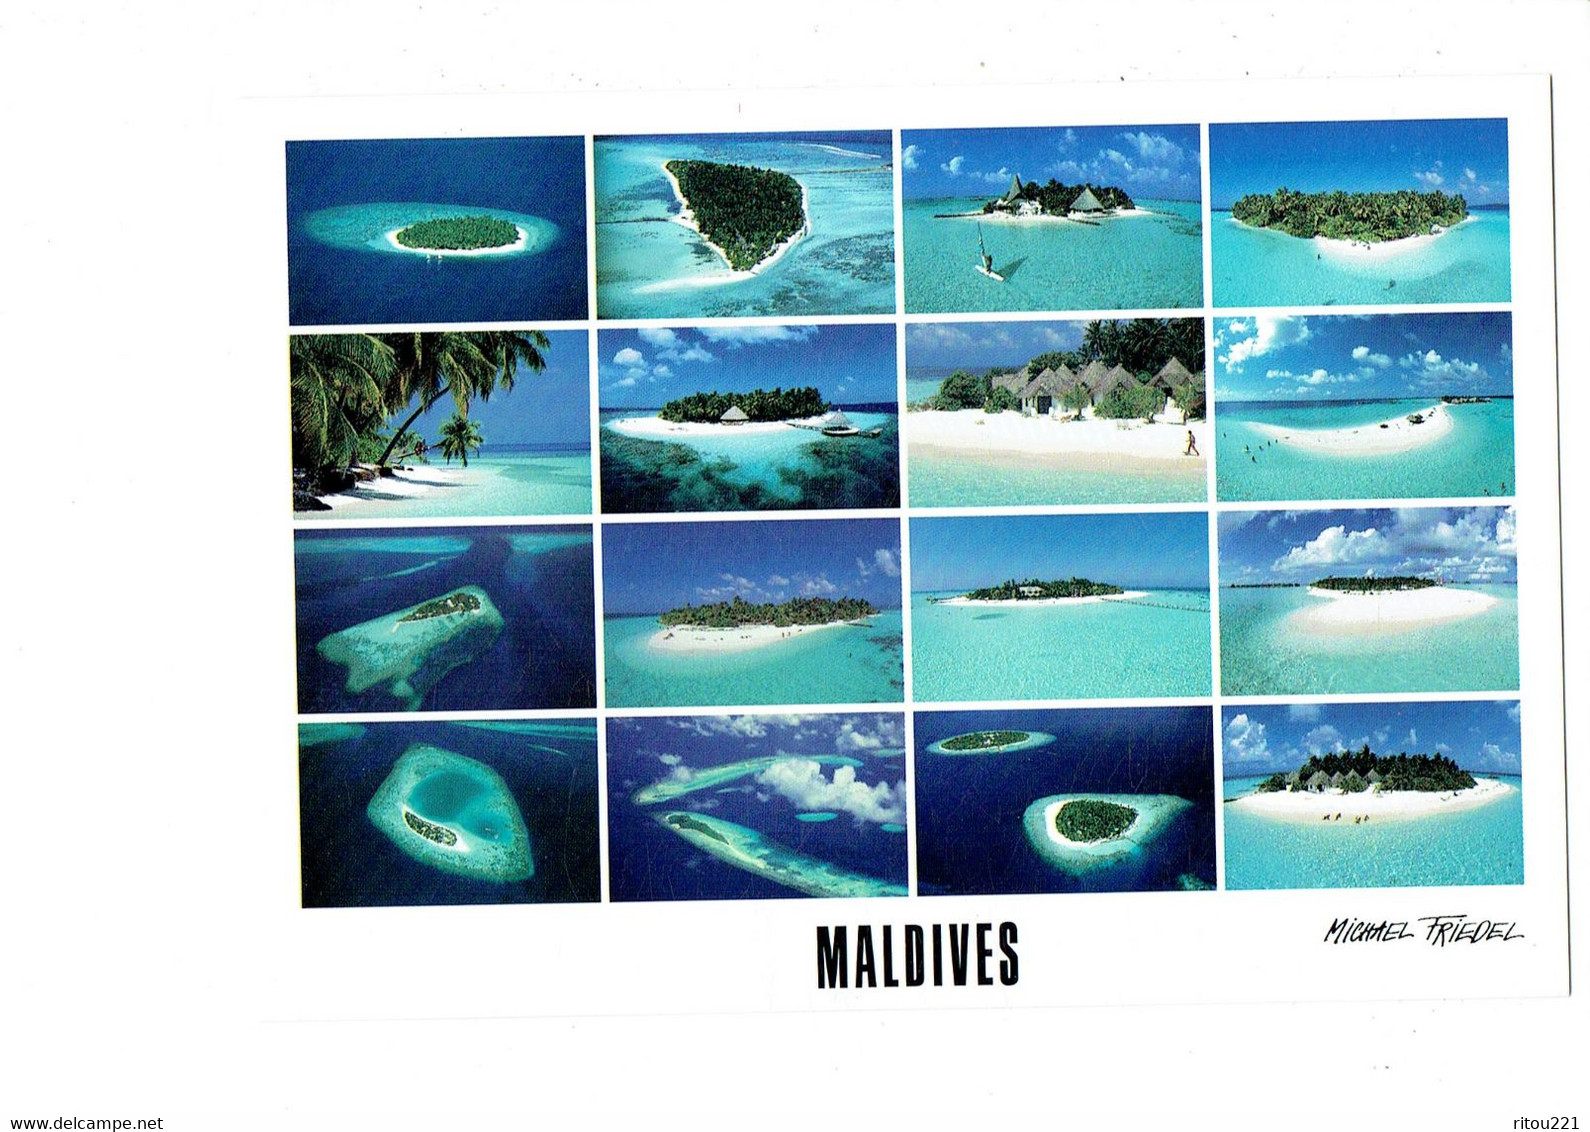 Cpm - MALDIVES - HOTEL ISLANDS - Photo Michael Friedel - Club Med. IHURU BANDOS Plage - Maldivas